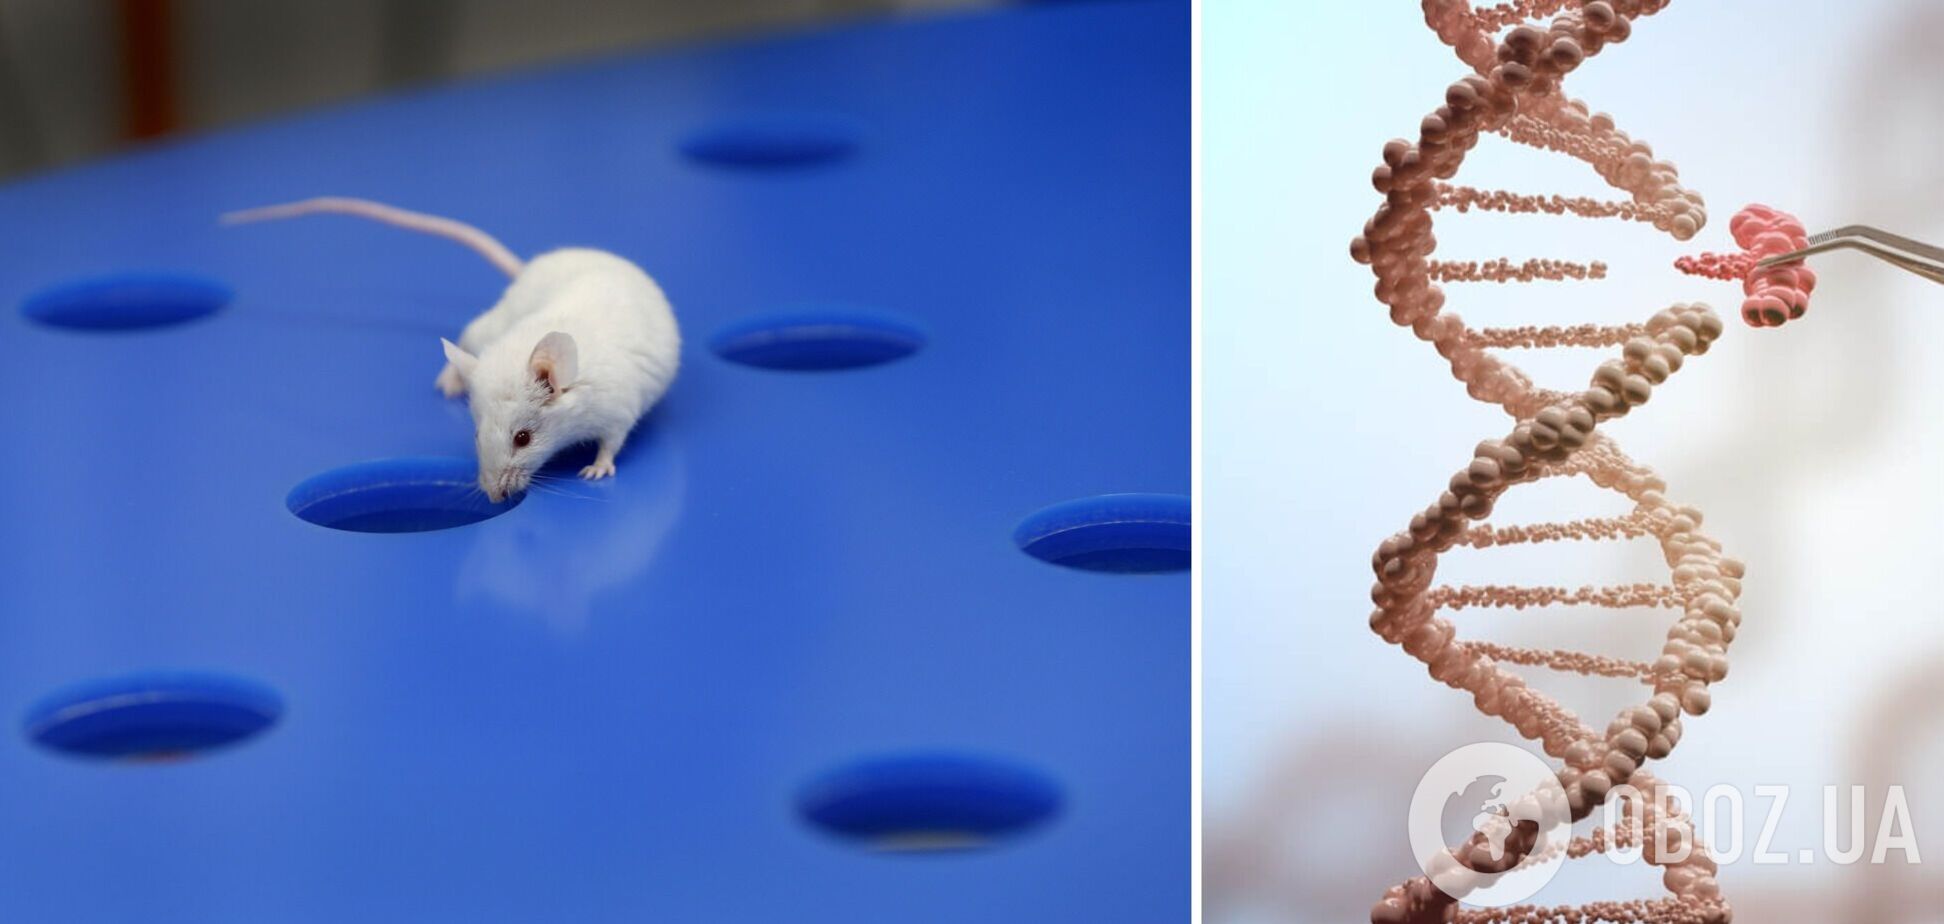 У генетически модифицированных мышей обнаружили источник молодости: он не имеет никаких побочных эффектов